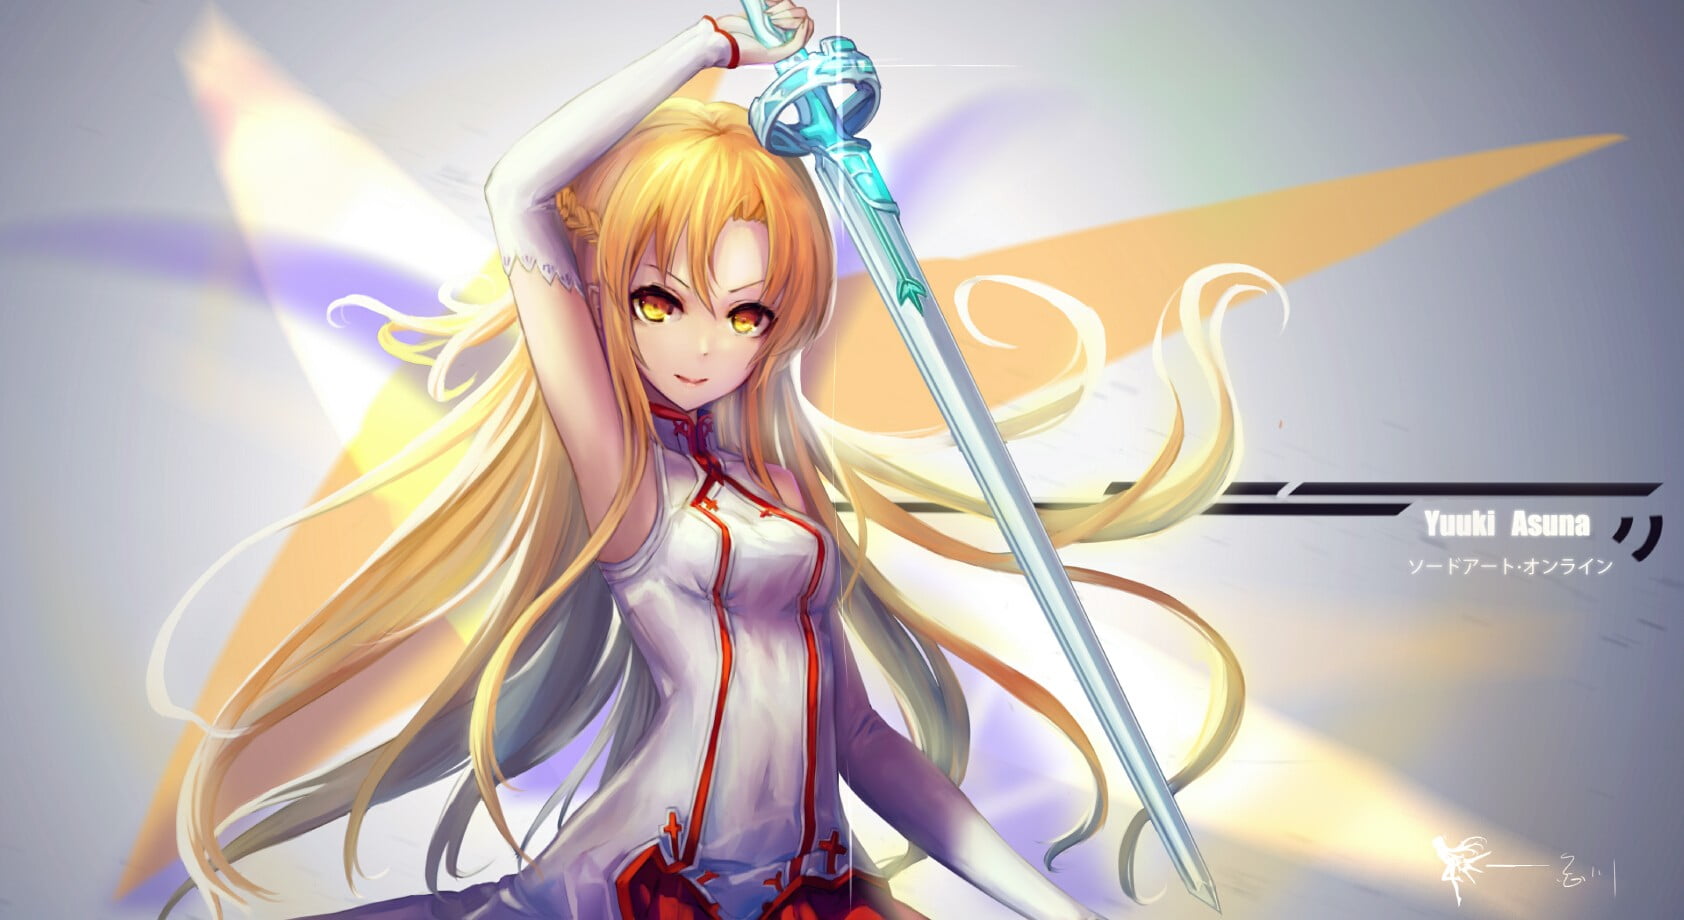 female animated character holding sword digital wallpaper, Sword Art Online